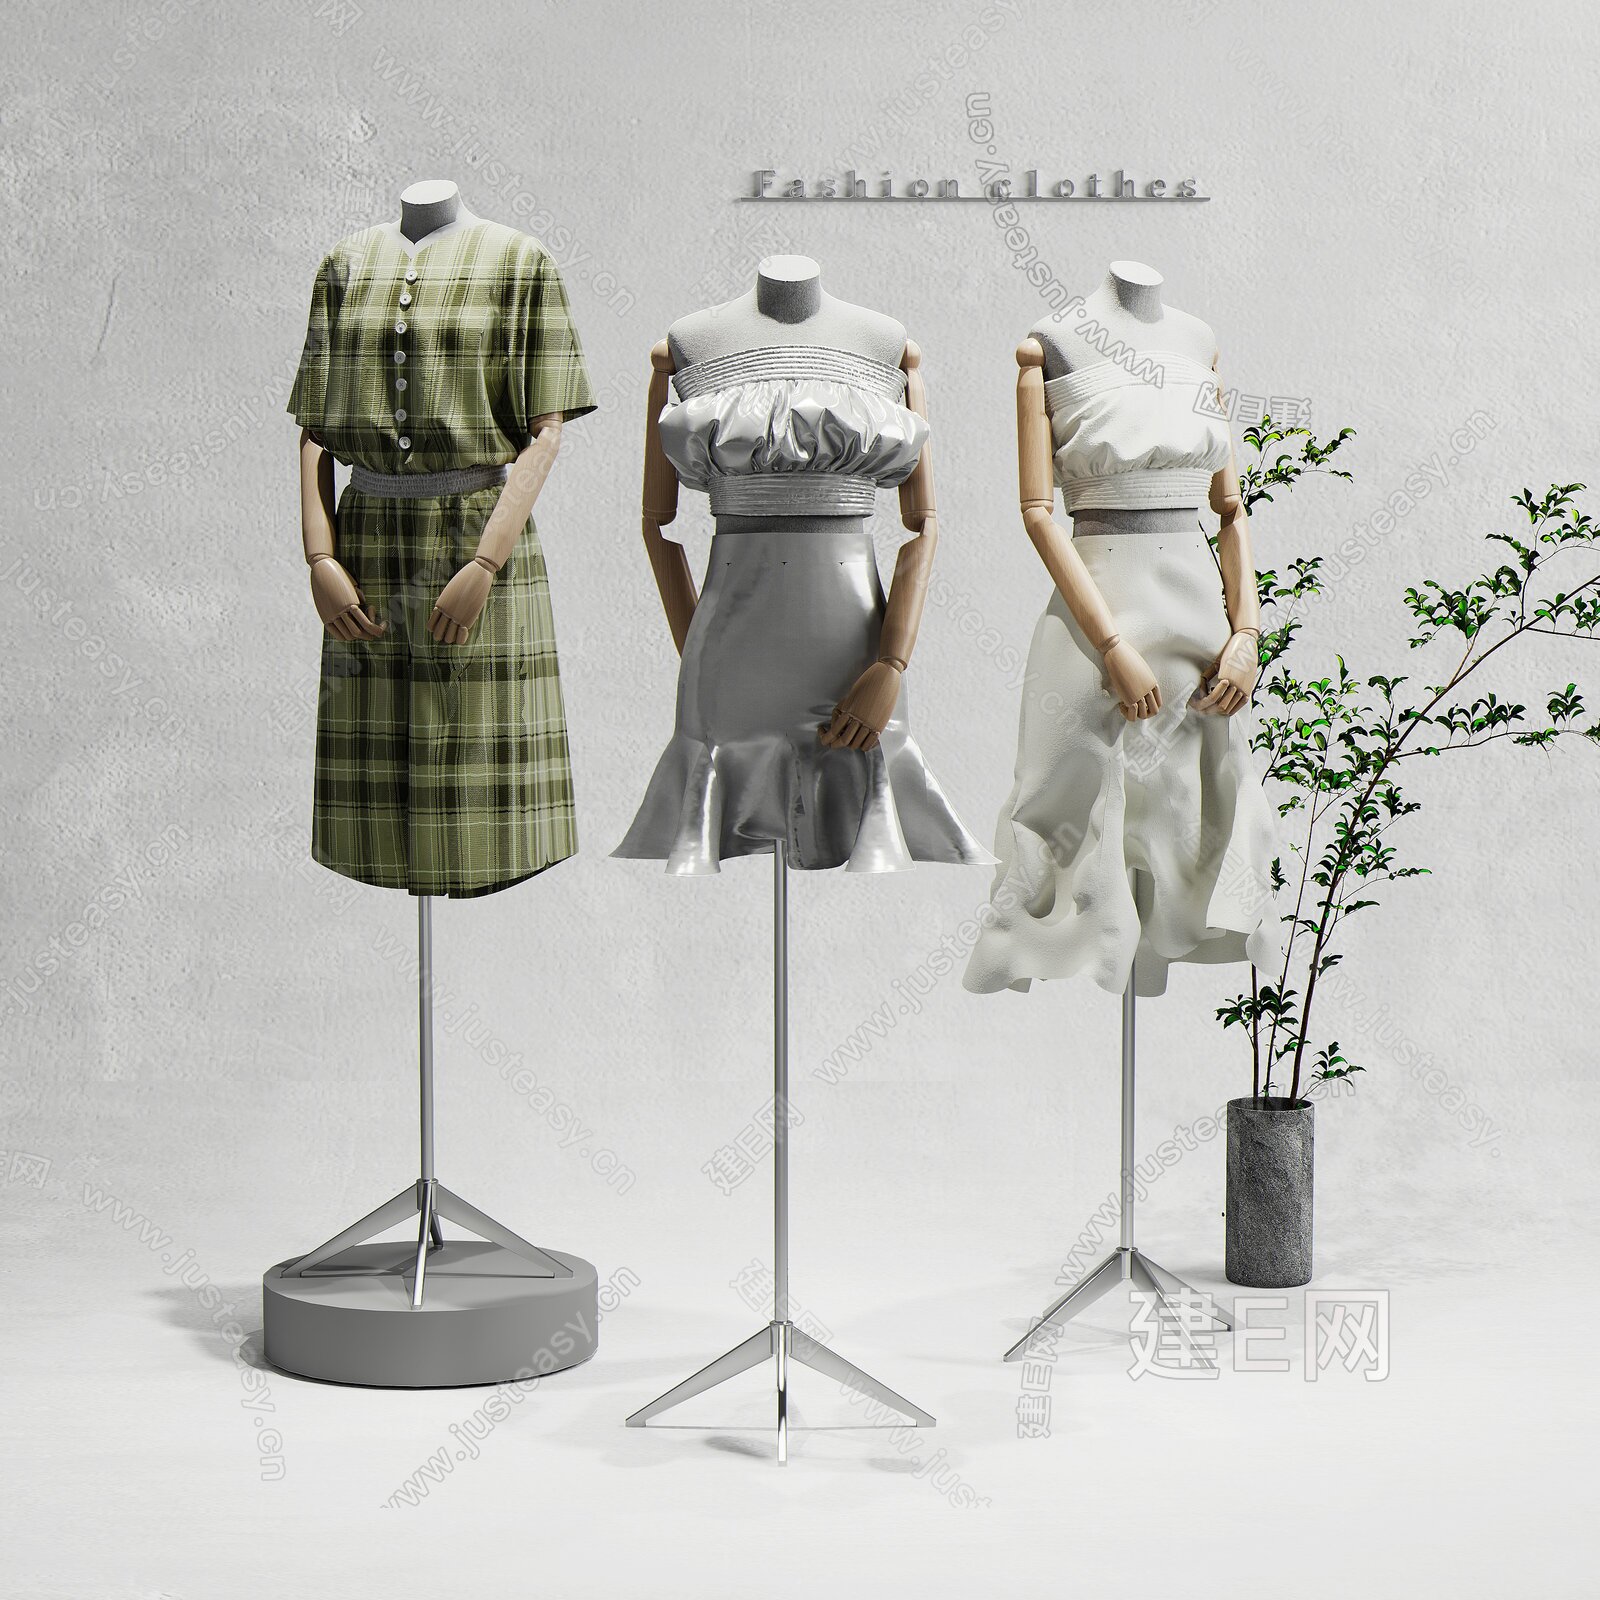 3D人物模型 女装服装店 商场 3D模特下载 - 3D人物游戏模型下载-3dmax室内模型 家具 沙发3D模型 植物模型 人物 游戏动画模型 ...